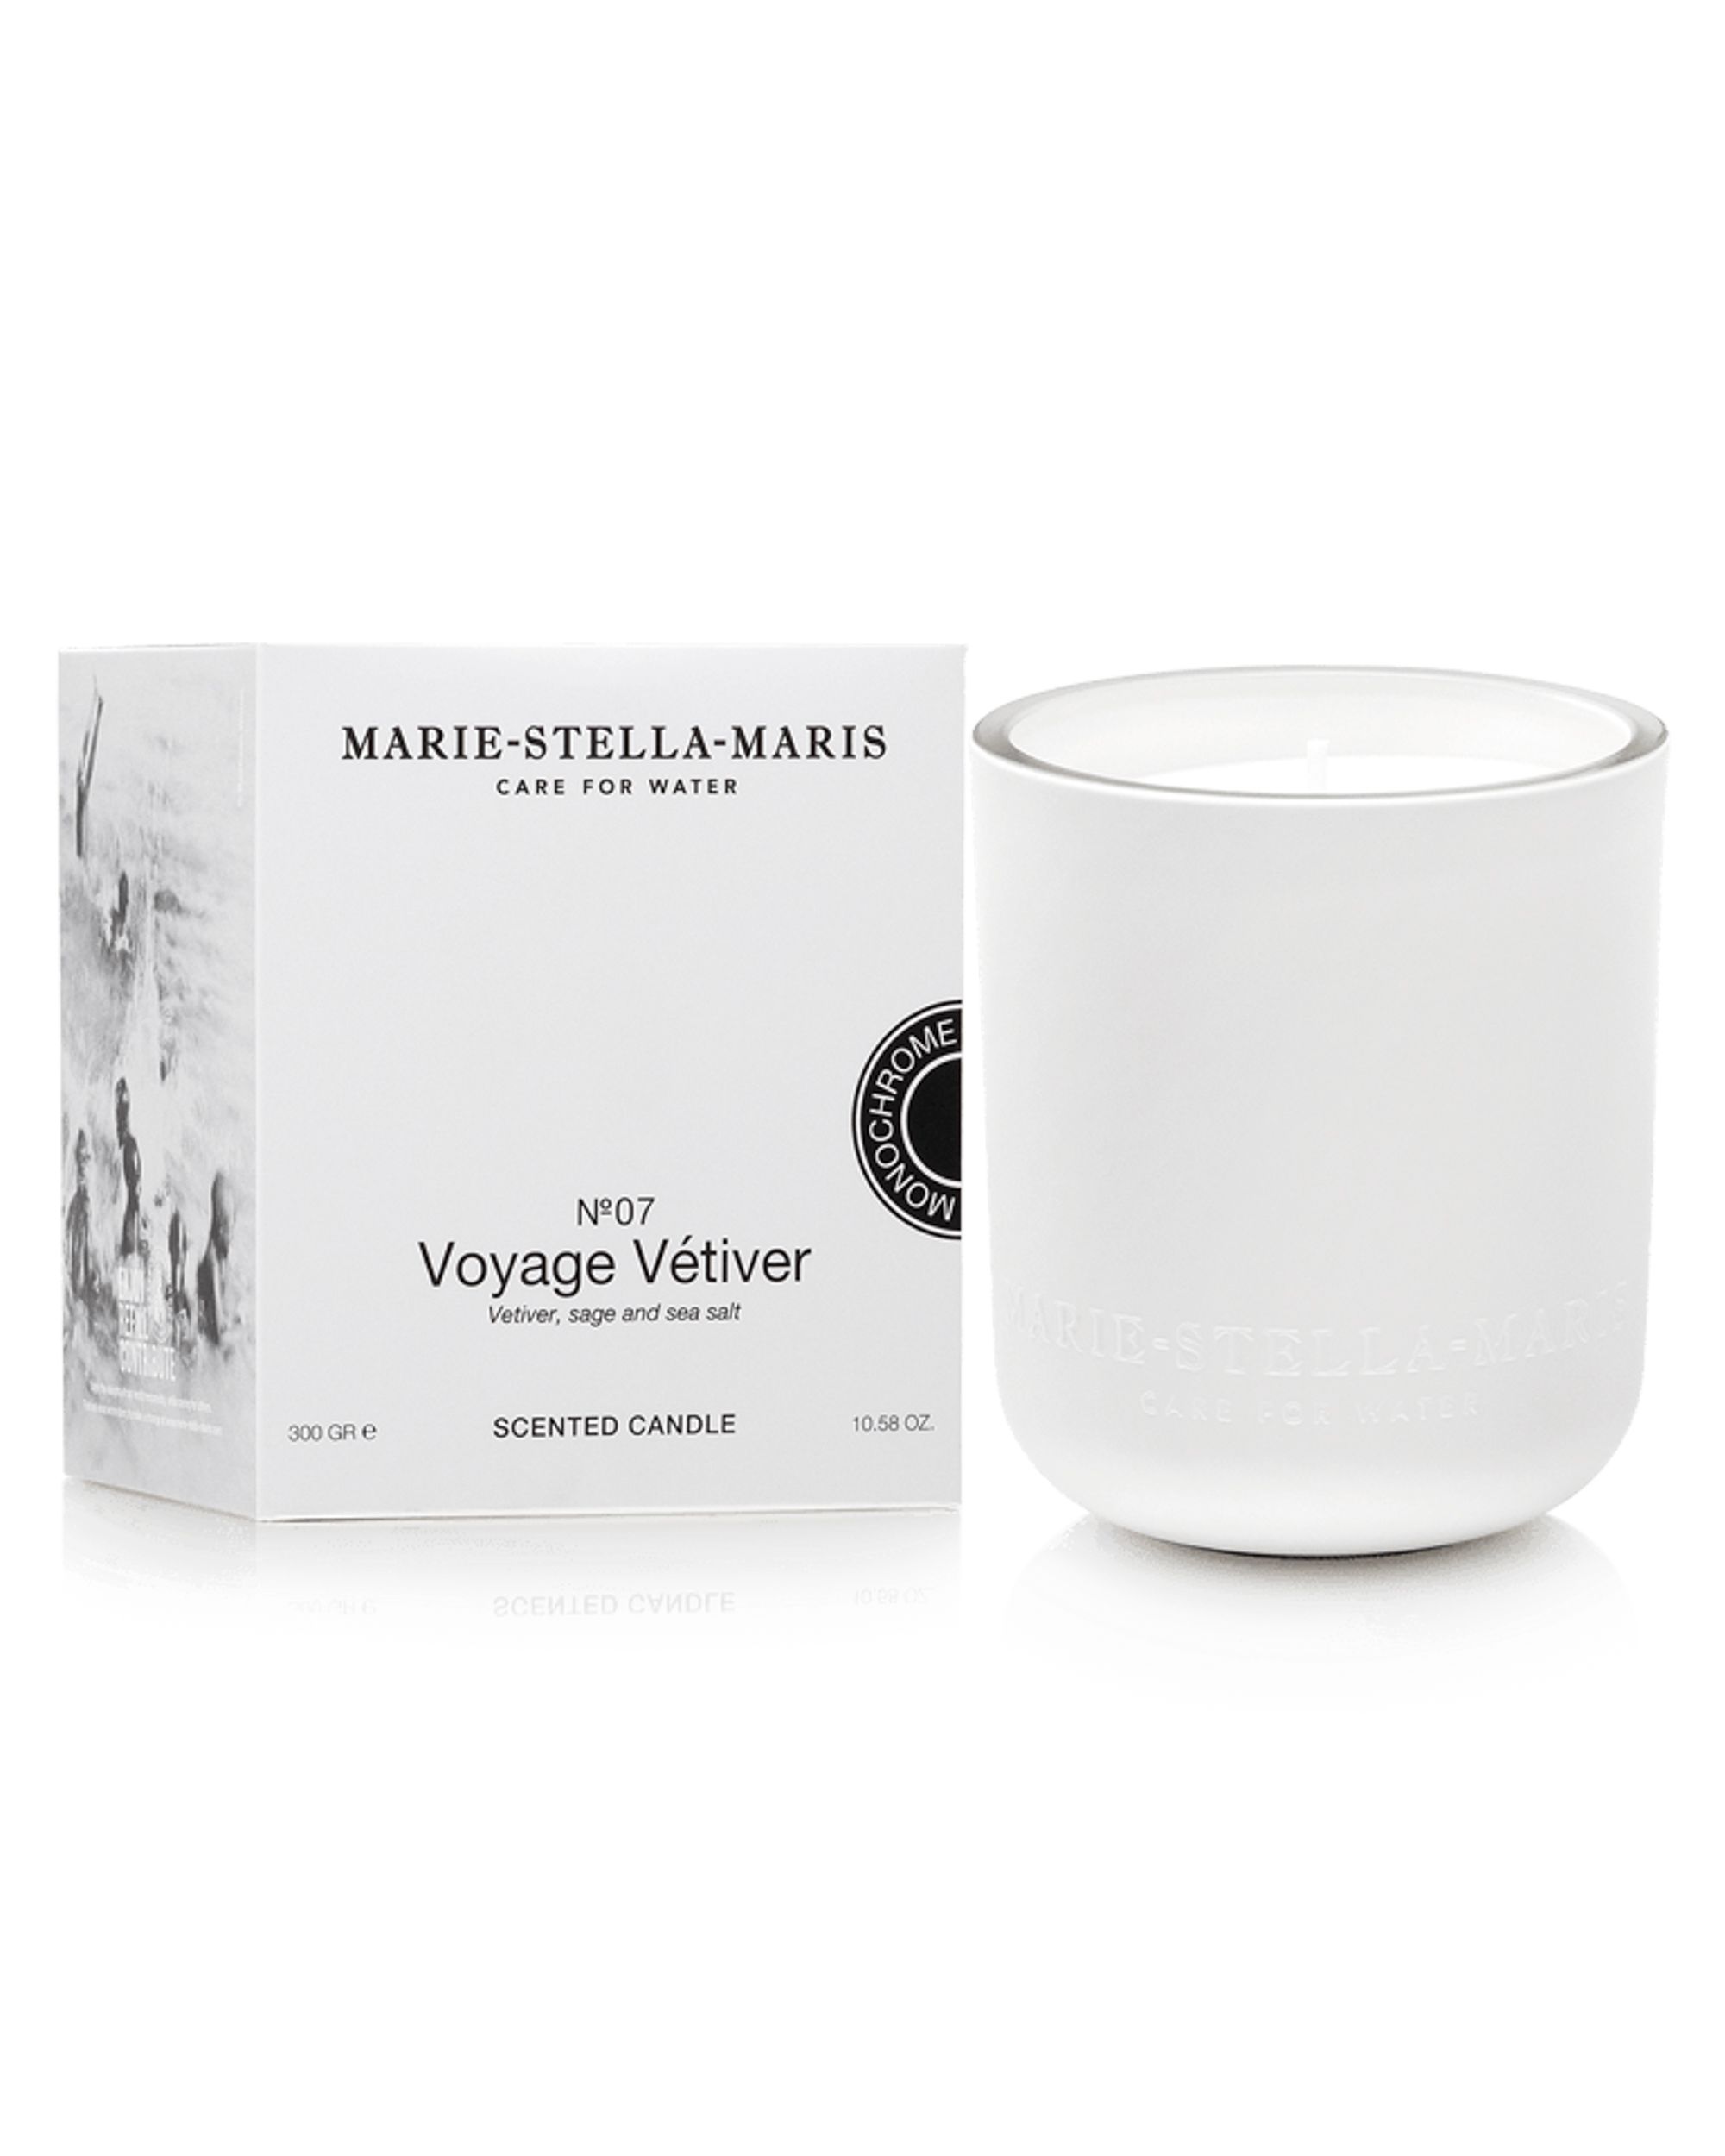 Marie-Stella-Maris Candle Voyage Vetiver 300 gr NVT 092135-001-220 GR